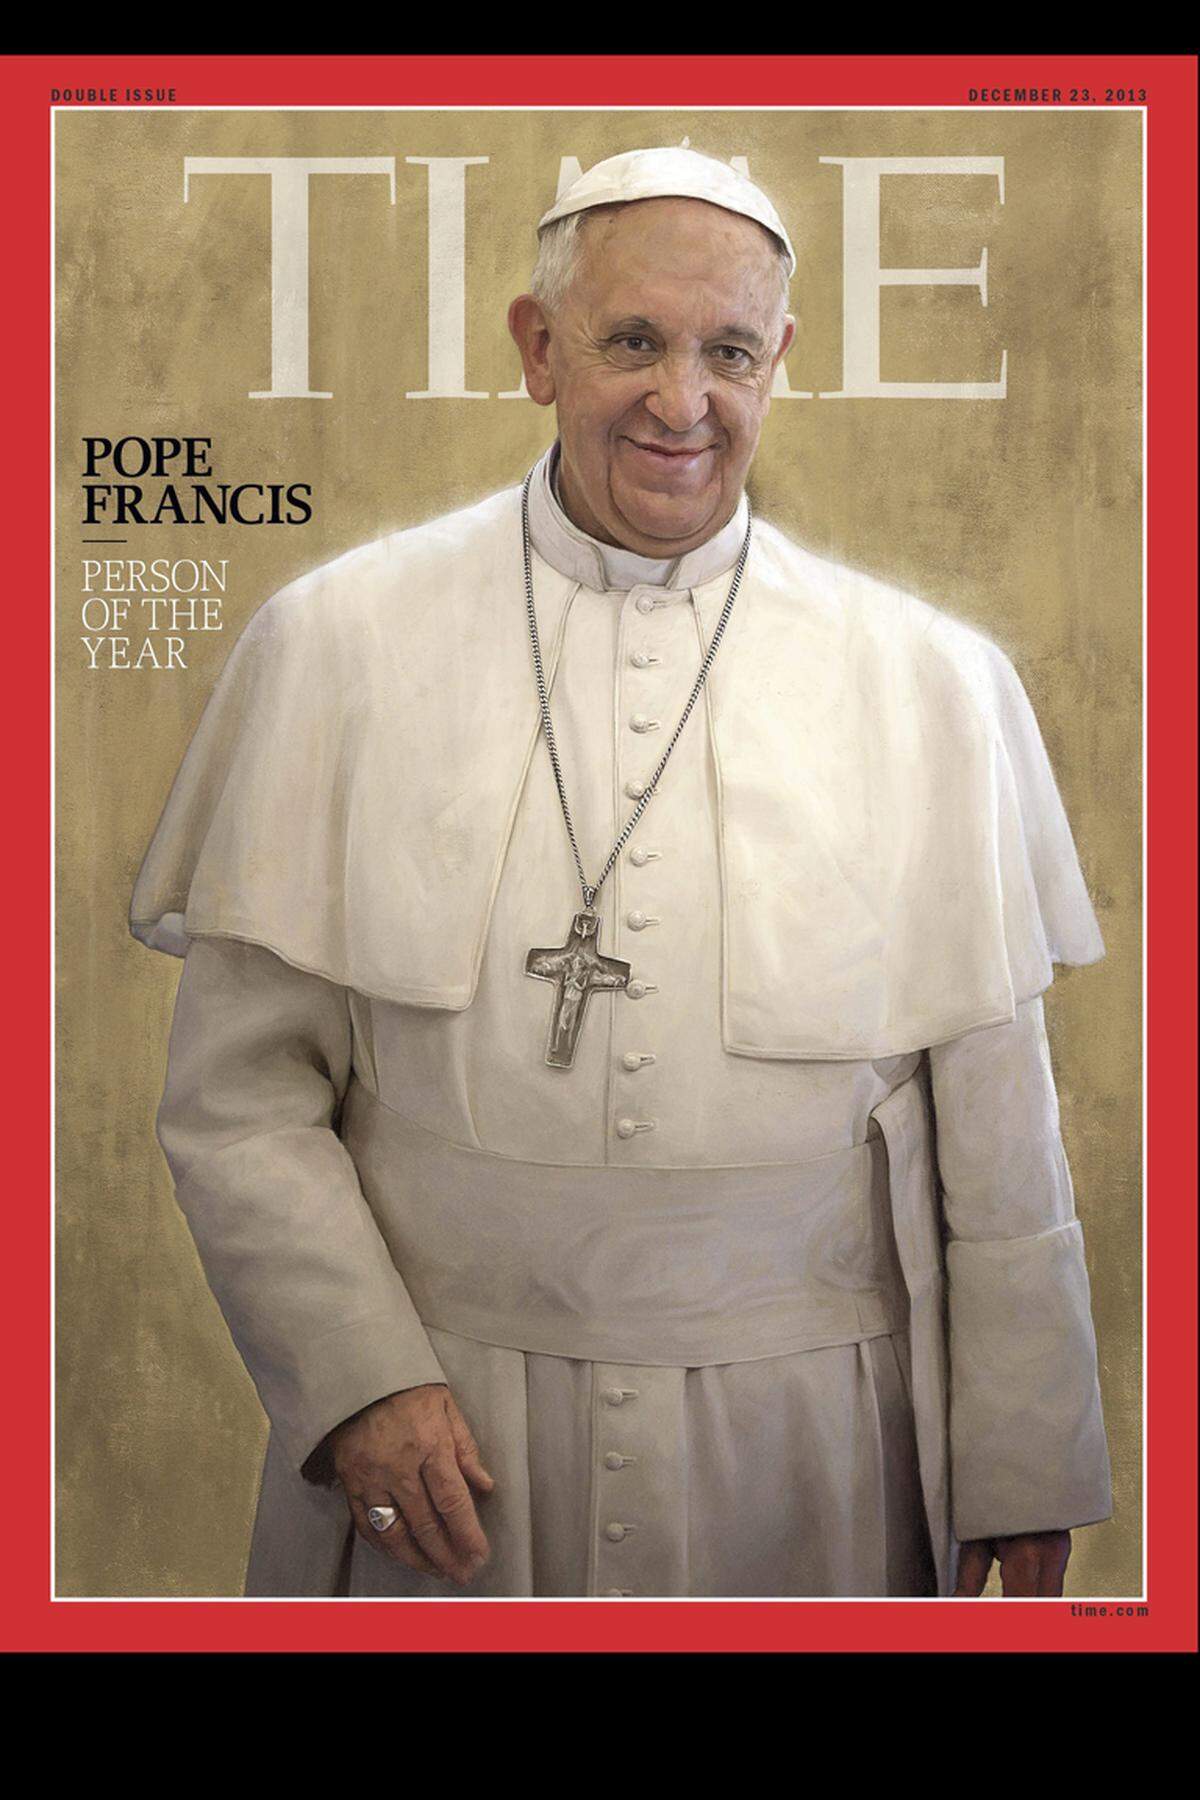 Das 77. Lebensjahr des Papstes war ein herausragendes; Ein Jahr, in dem der Papst, die letzte Stufe des kirchlichen Karriereleiter erklommen hat und er mit seinem unkonventionellen Auftreten und neuen Ansagen auch vom Time Magazine zur Person des Jahres gewählt wurde.